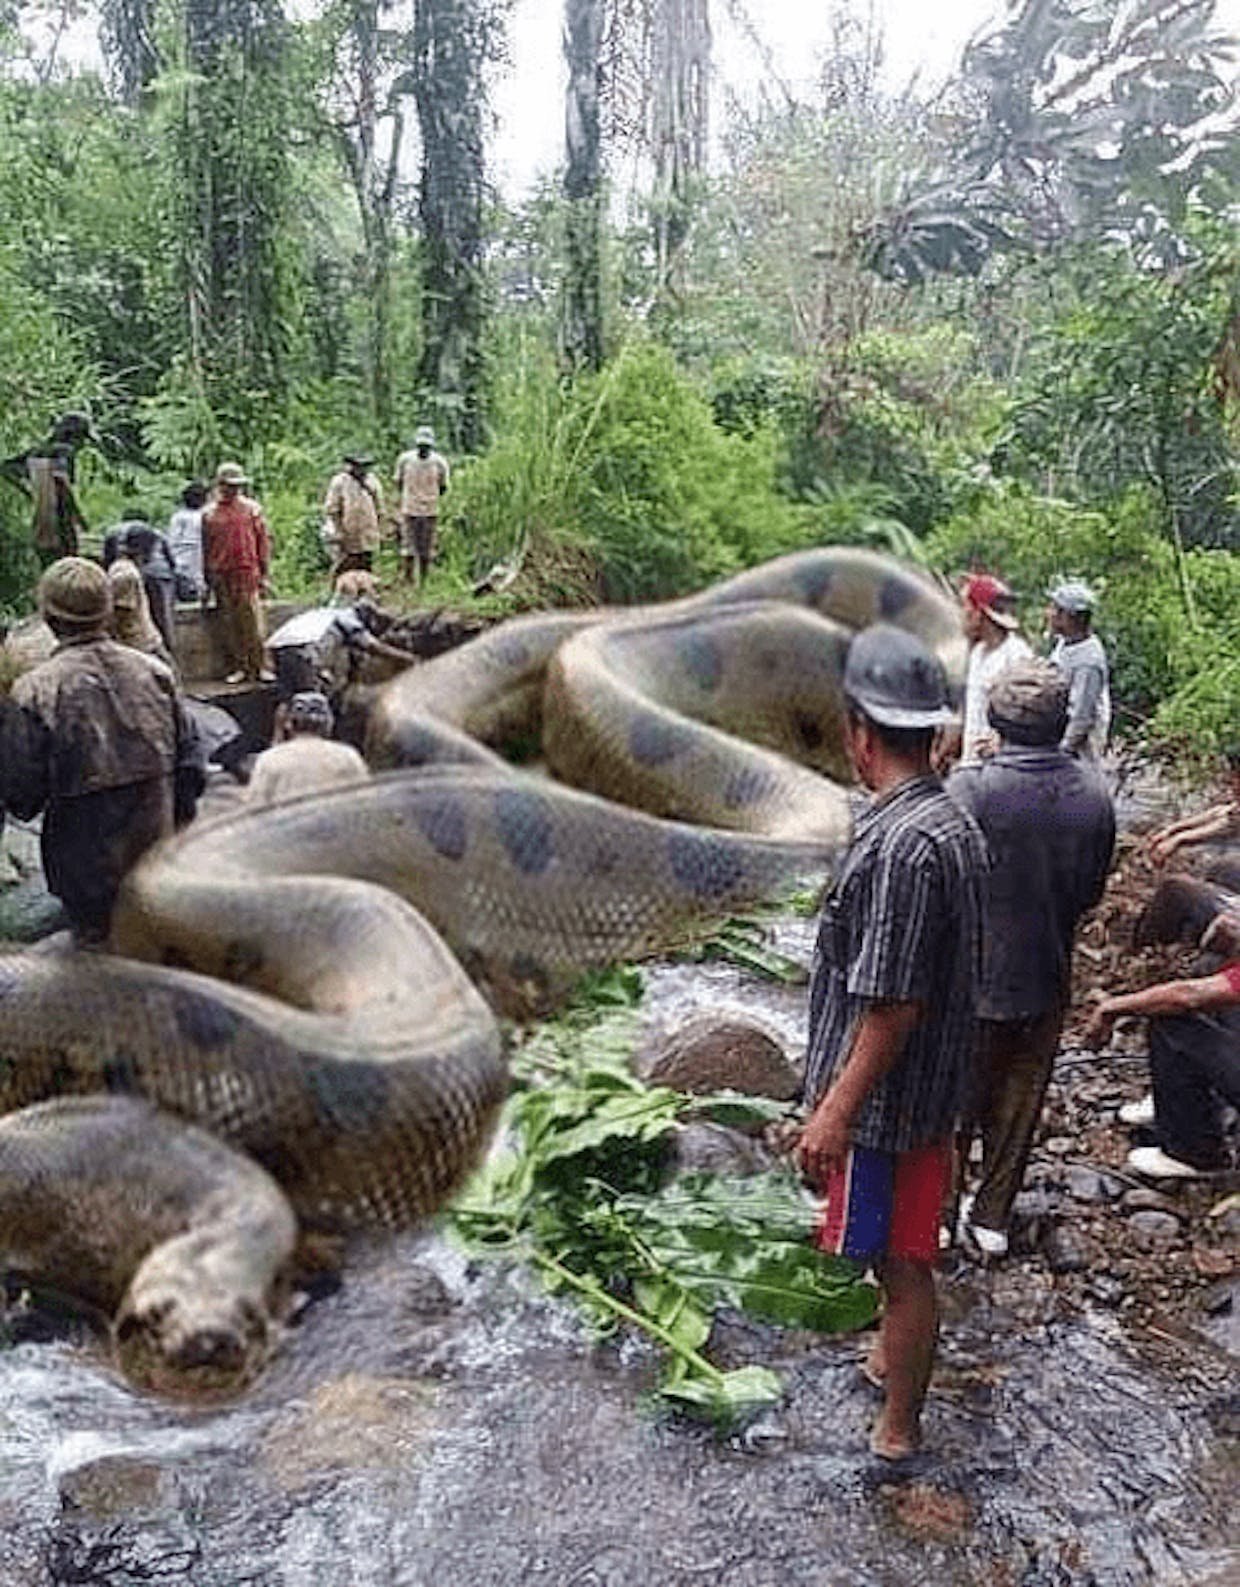 Где живет анаконда. Самая большая Анаконда река Амазонка. Анаконда змея. Большая змея Анаконда в Амазонке. Самая большая Анаконда 41м.